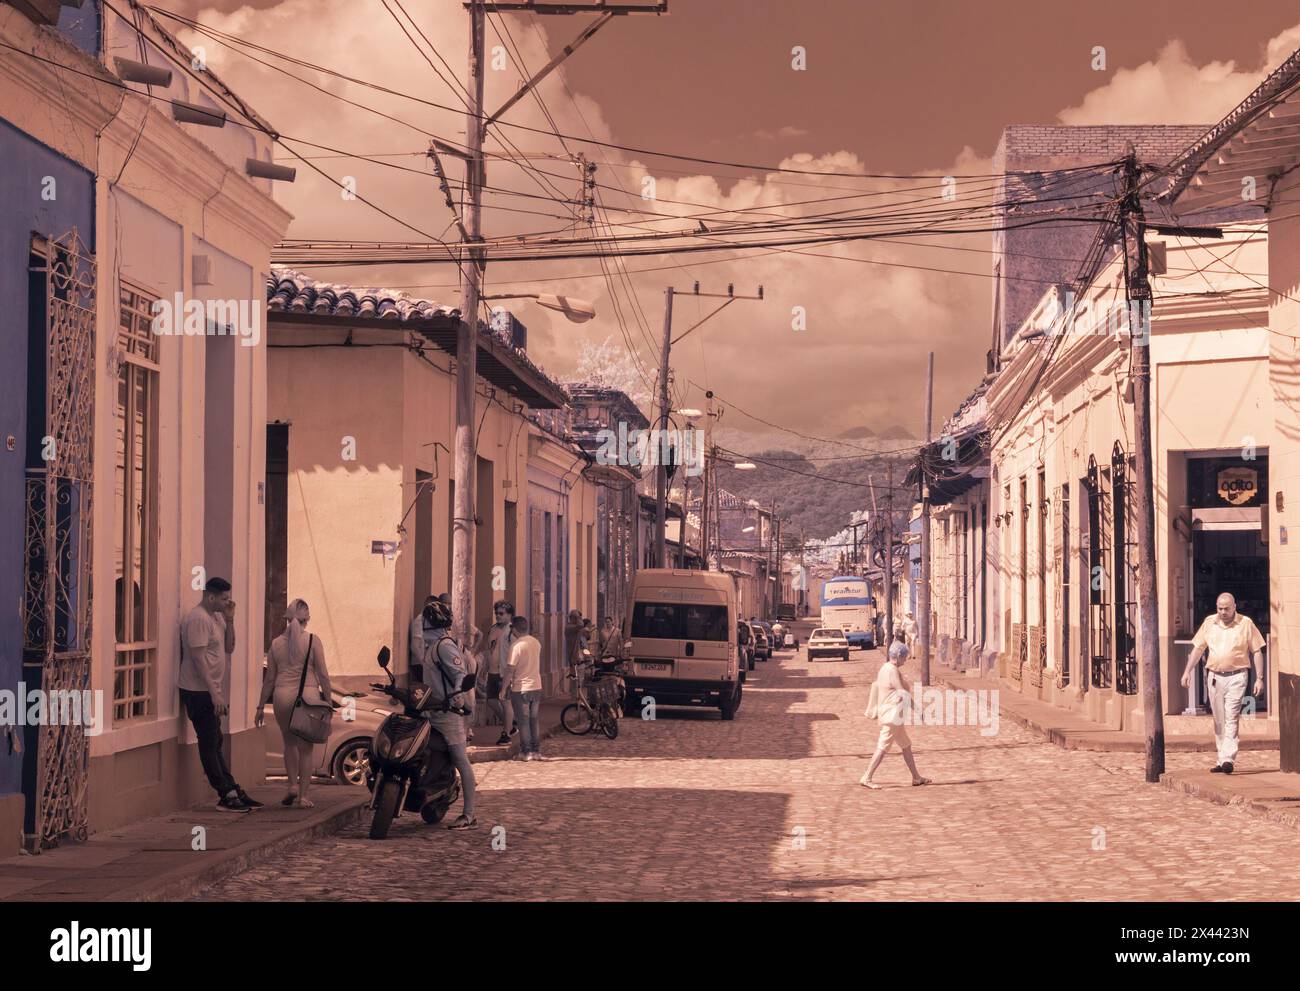 Une vue infrarouge le long de l'une des ruelles de la vieille ville de Trinidad, Cuba, montrant les rues pavées traditionnelles et les maisons aux couleurs pastel. Banque D'Images